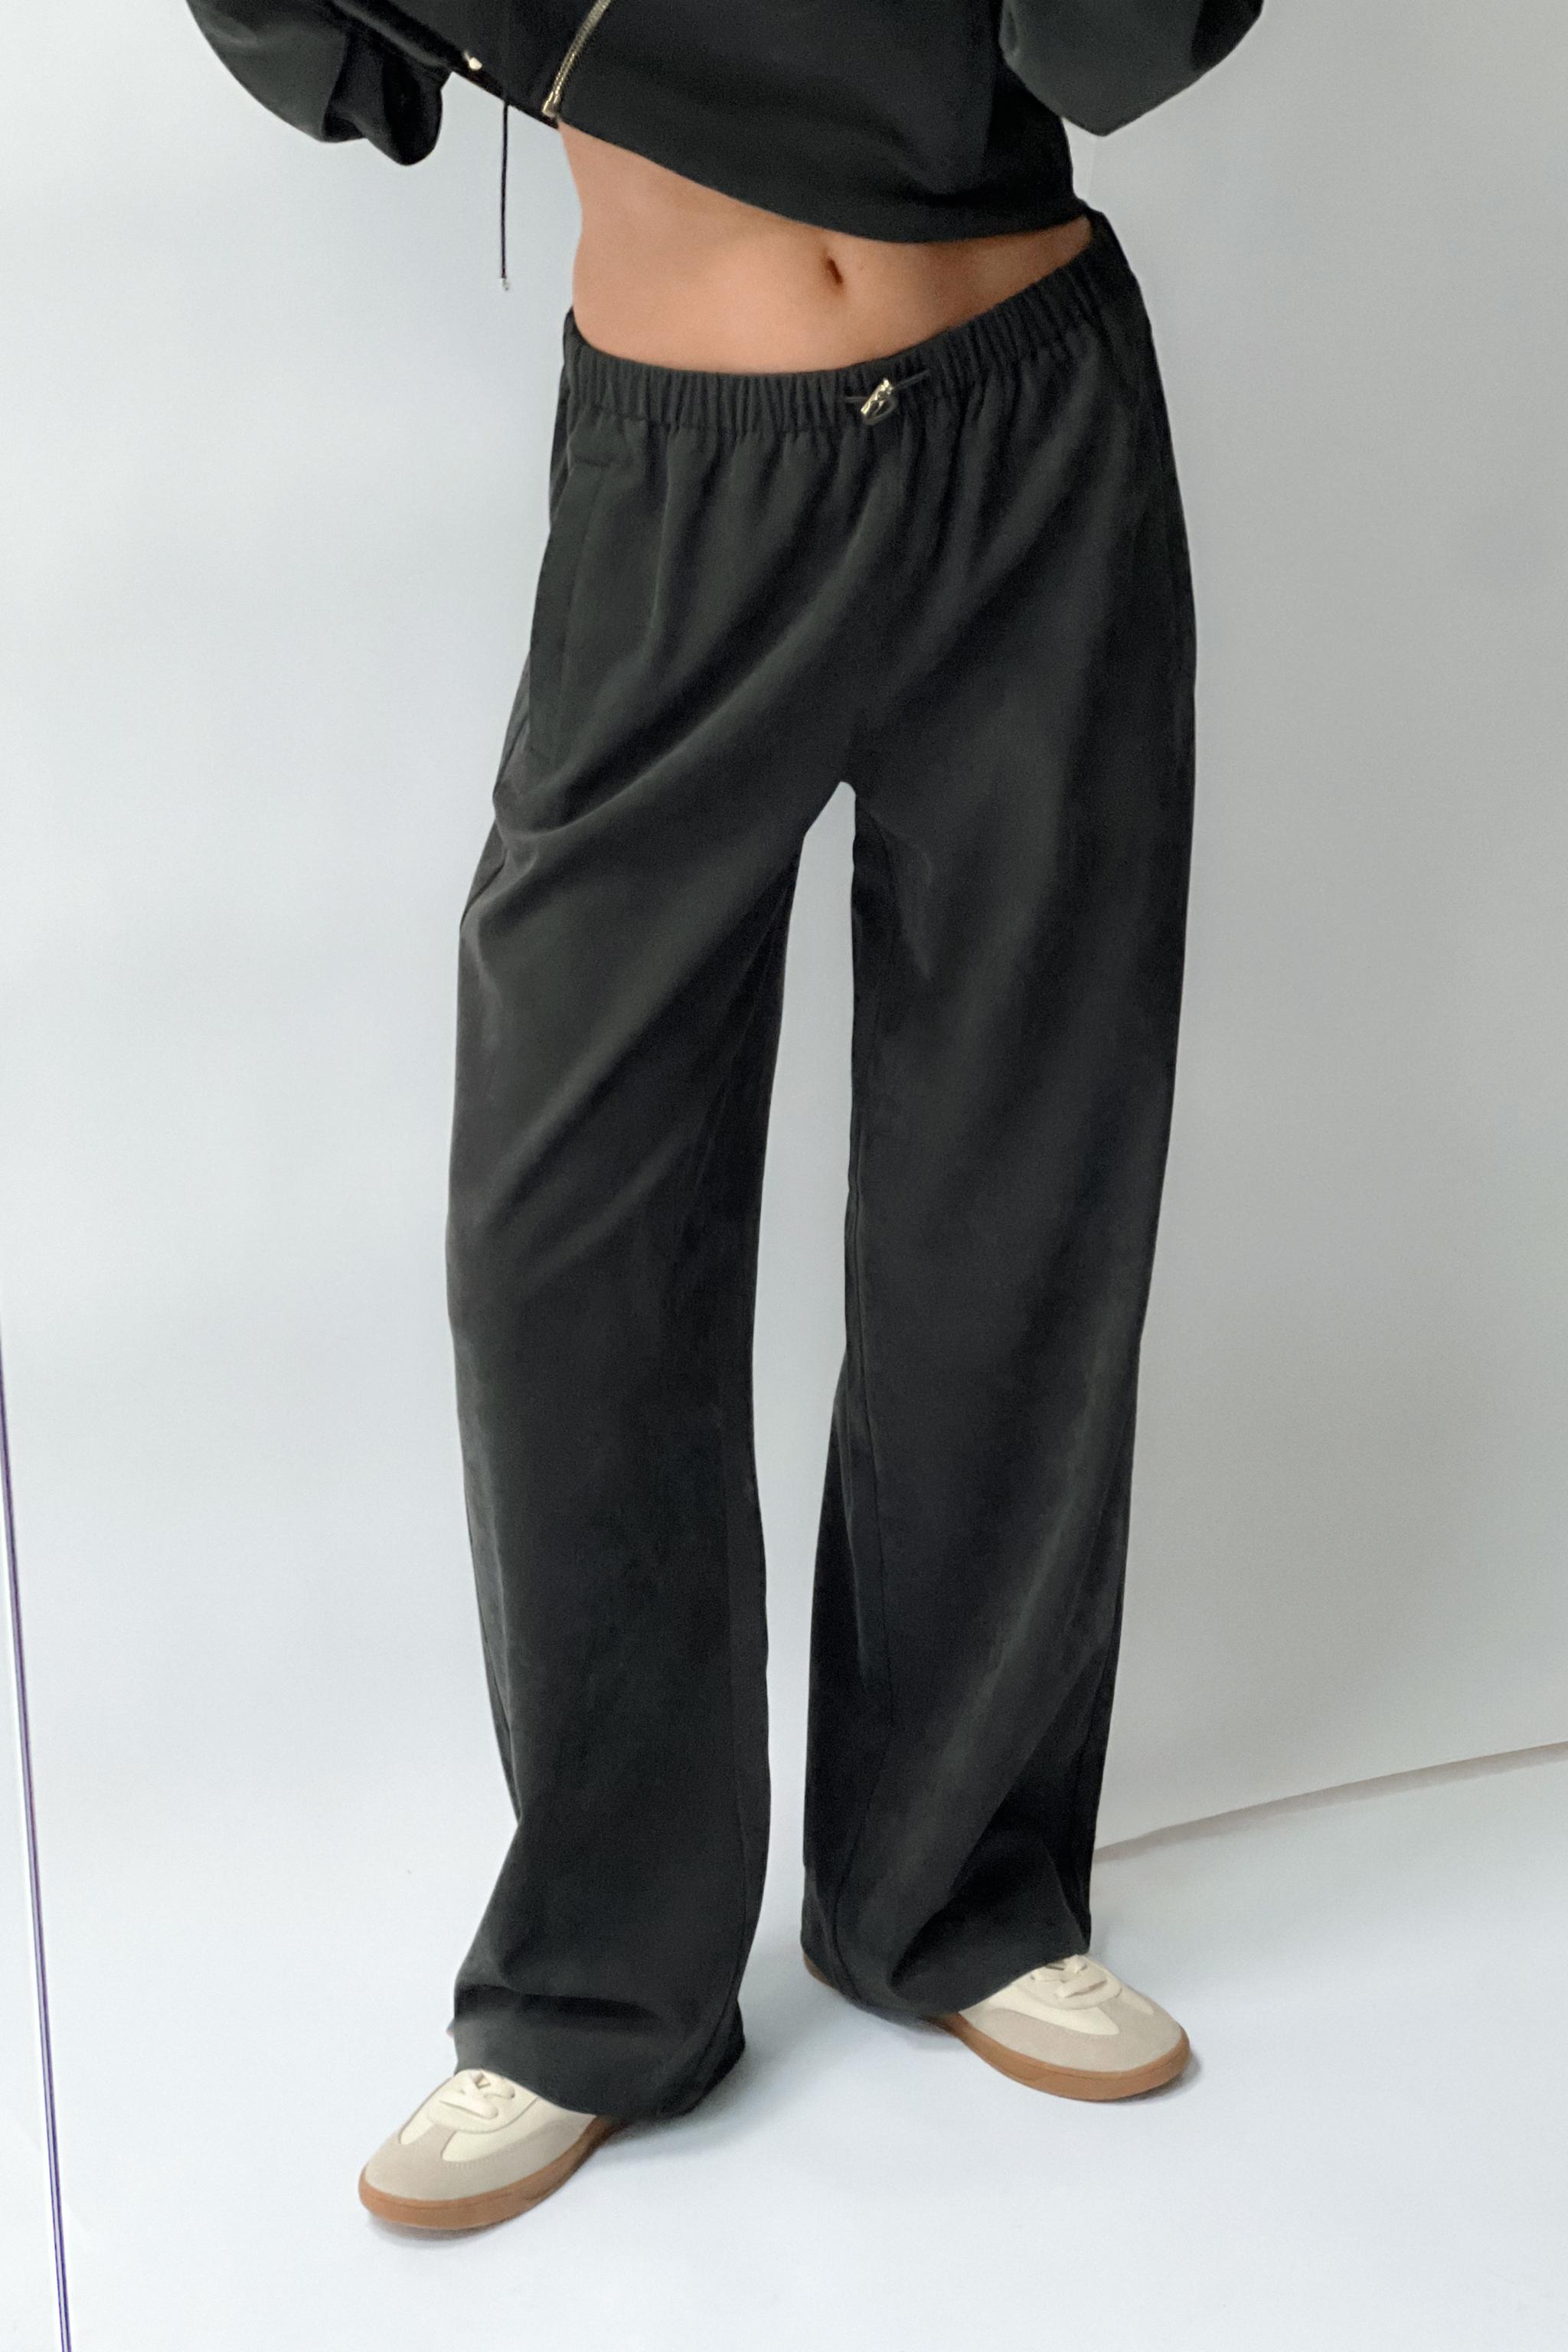 Escada Wide Leg Pants - Black, 11.75 Rise Pants, Clothing - ESC121172